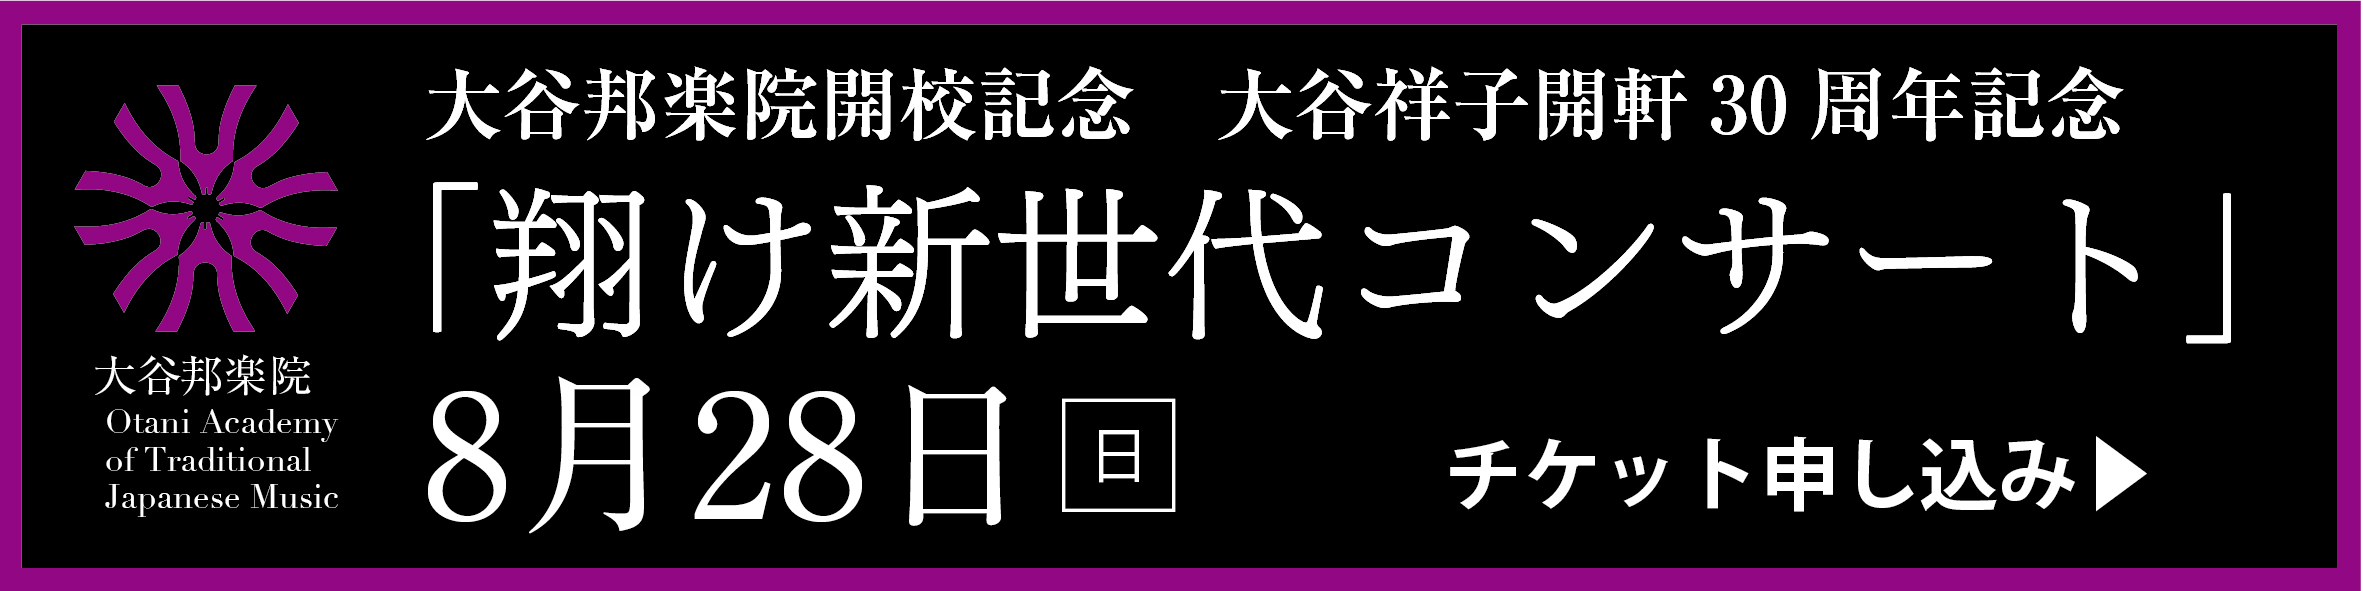 「翔け新世代コンサート」8月28日(日)